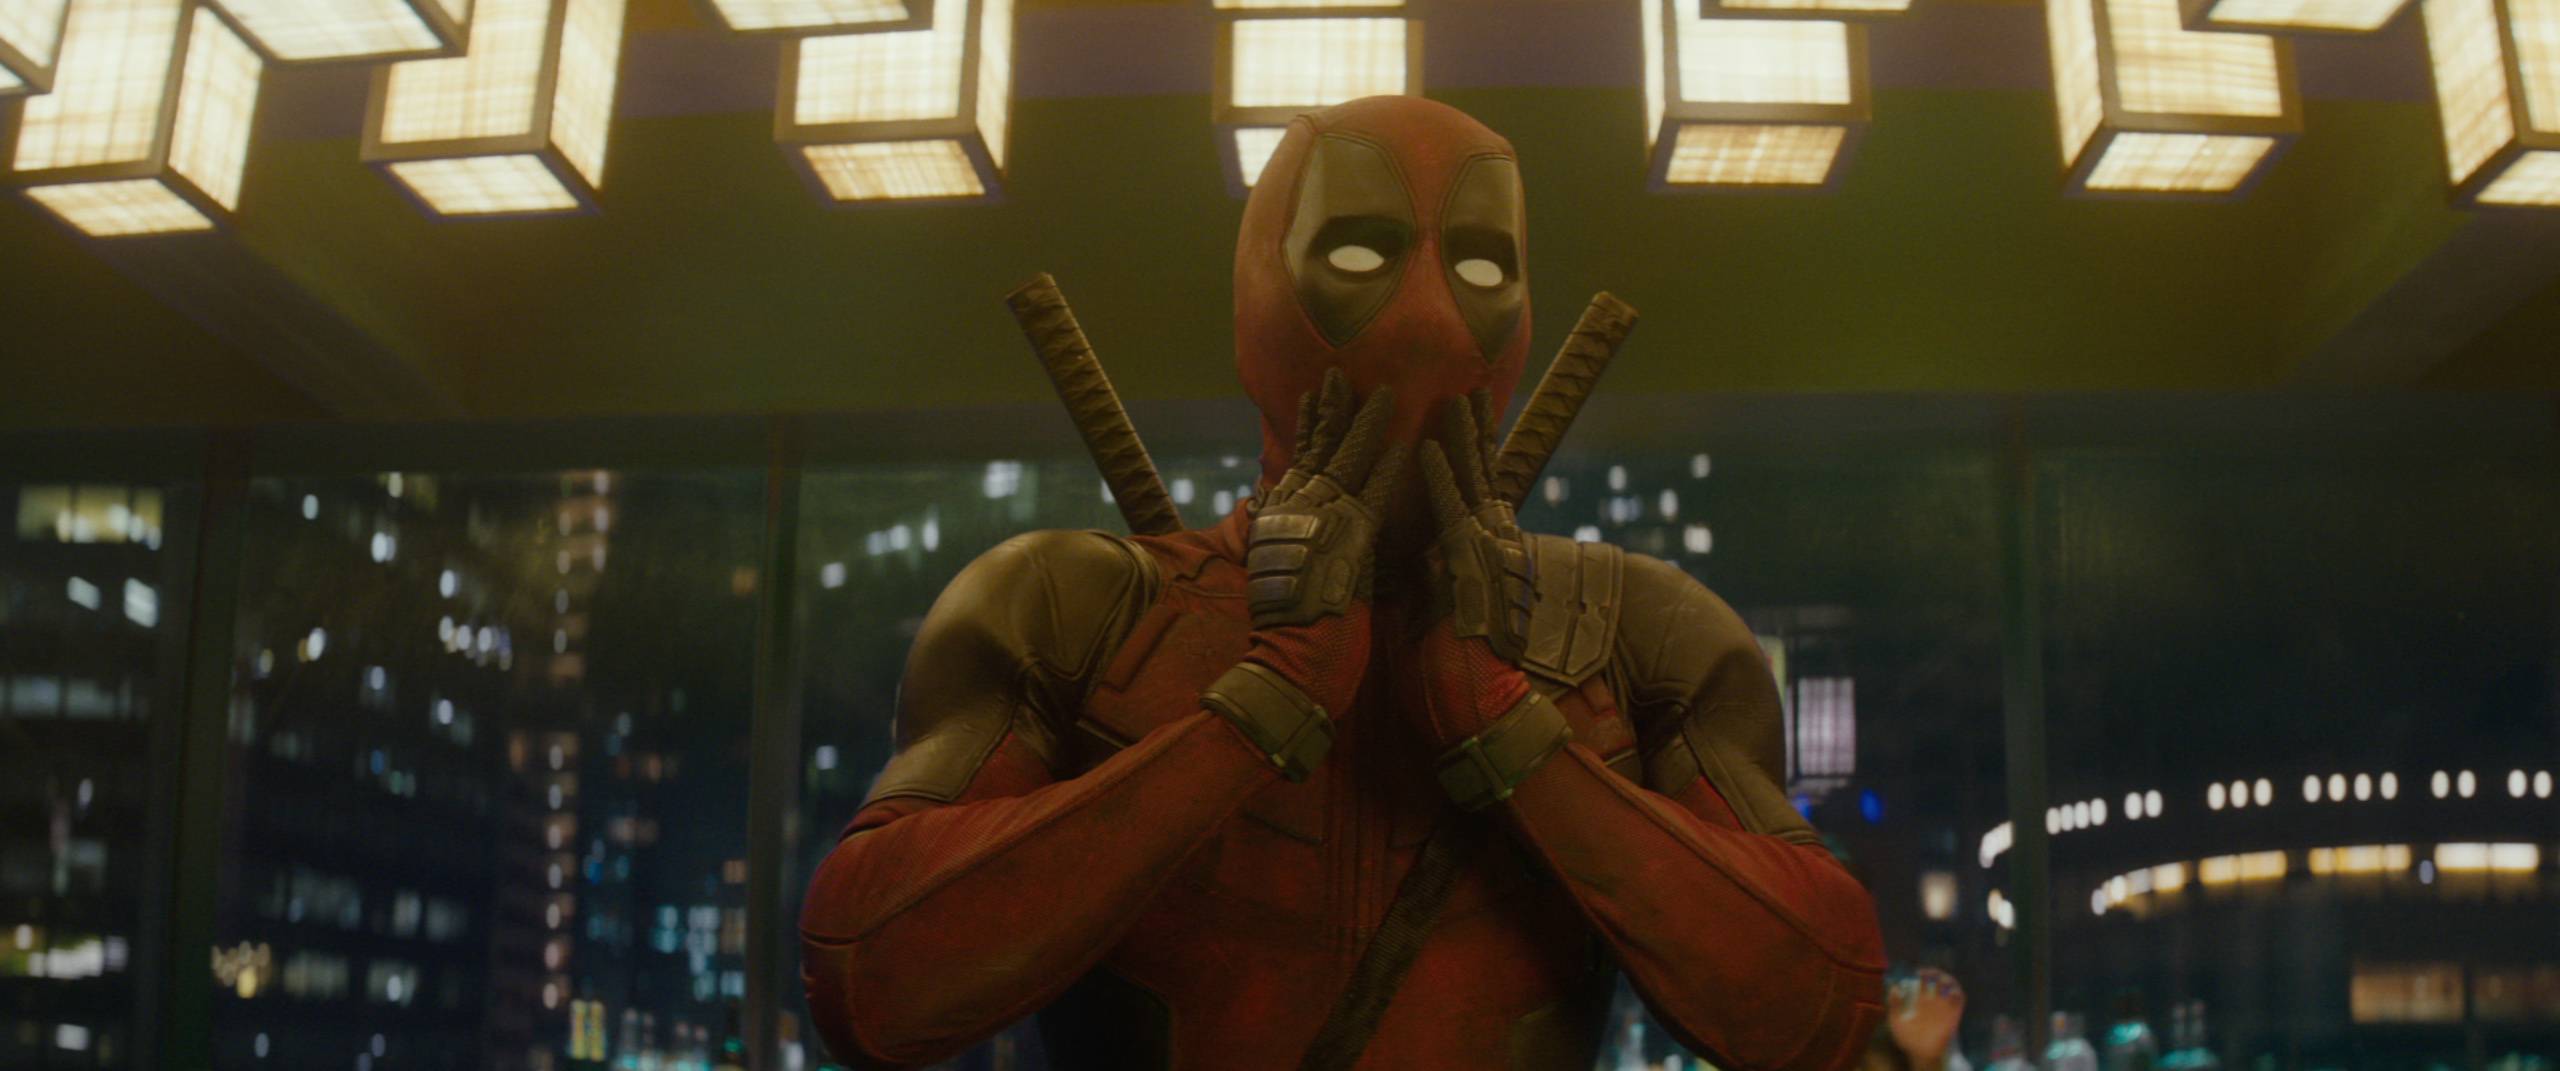 Deadpool 3, znany szerzej jako “Deadpool i Wolverine”: gdzie obejrzeć nowy film Marvel Studios? Sprawdź i zobacz!